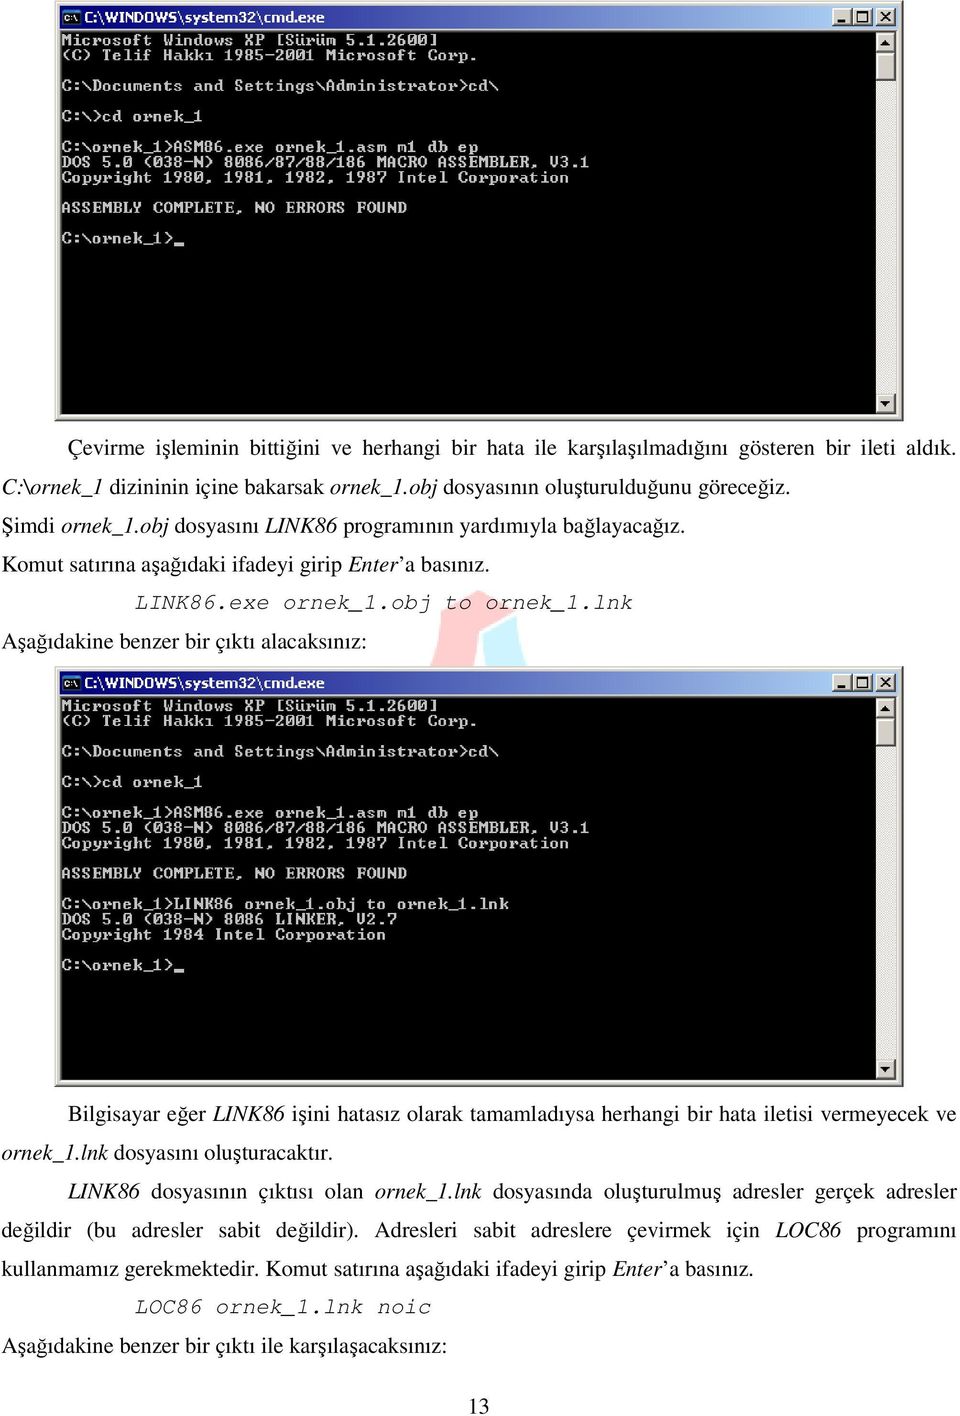 lnk Aşağıdakine benzer bir çıktı alacaksınız: Bilgisayar eğer LINK86 işini hatasız olarak tamamladıysa herhangi bir hata iletisi vermeyecek ve ornek_1.lnk dosyasını oluşturacaktır.